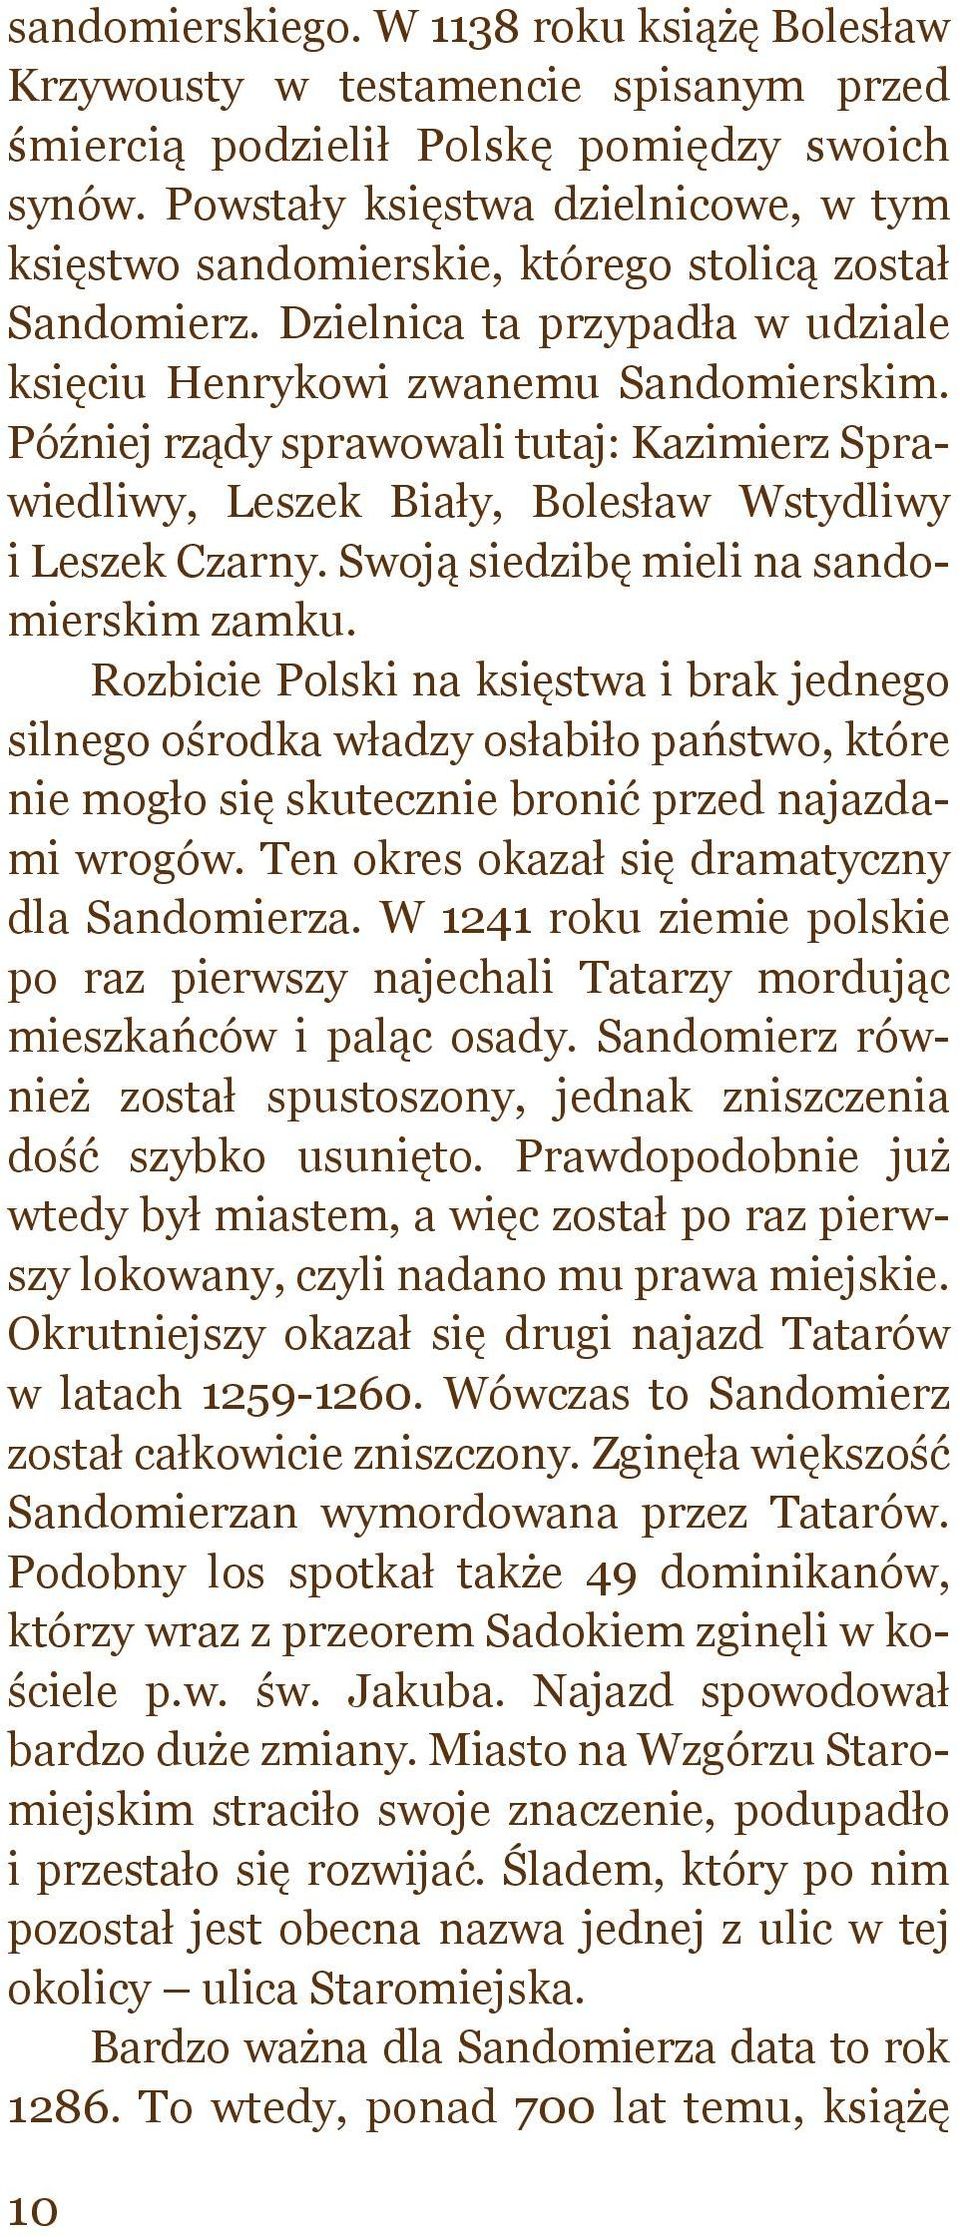 Później rządy sprawowali tutaj: Kazimierz Sprawiedliwy, Leszek Biały, Bolesław Wstydliwy i Leszek Czarny. Swoją siedzibę mieli na sandomierskim zamku.